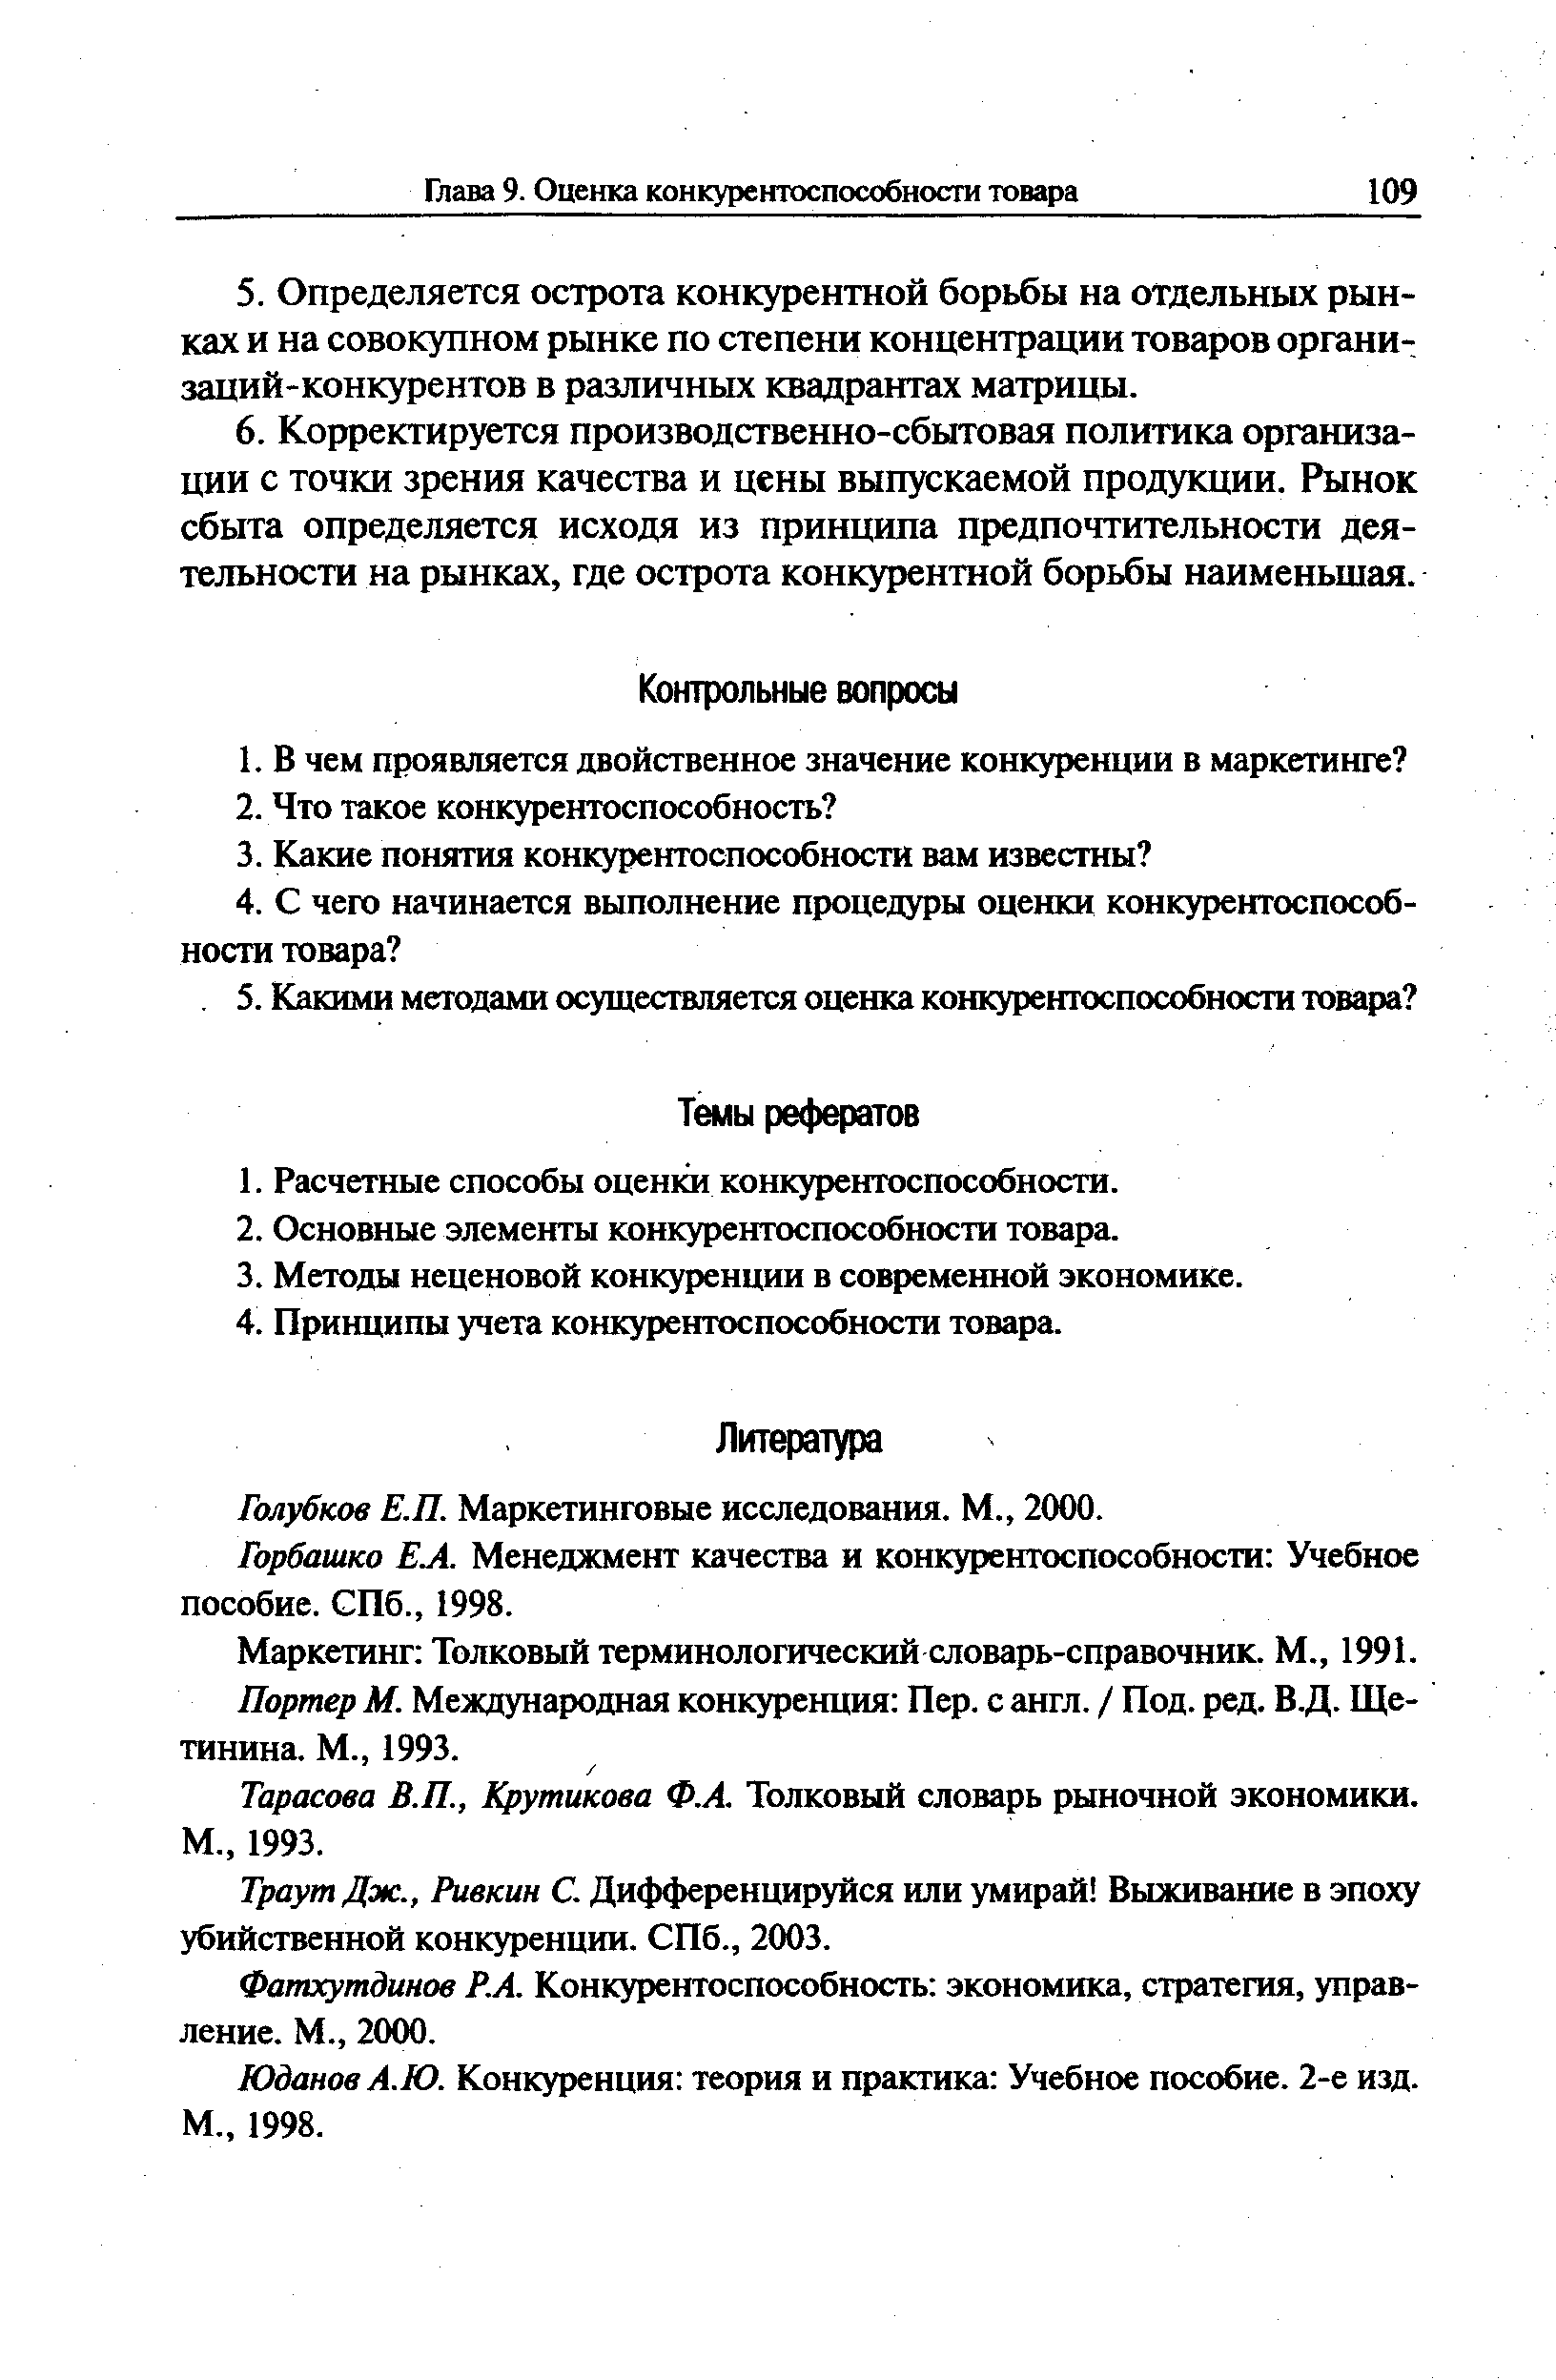 Голубков Е.П. Маркетинговые исследования. М., 2000.
